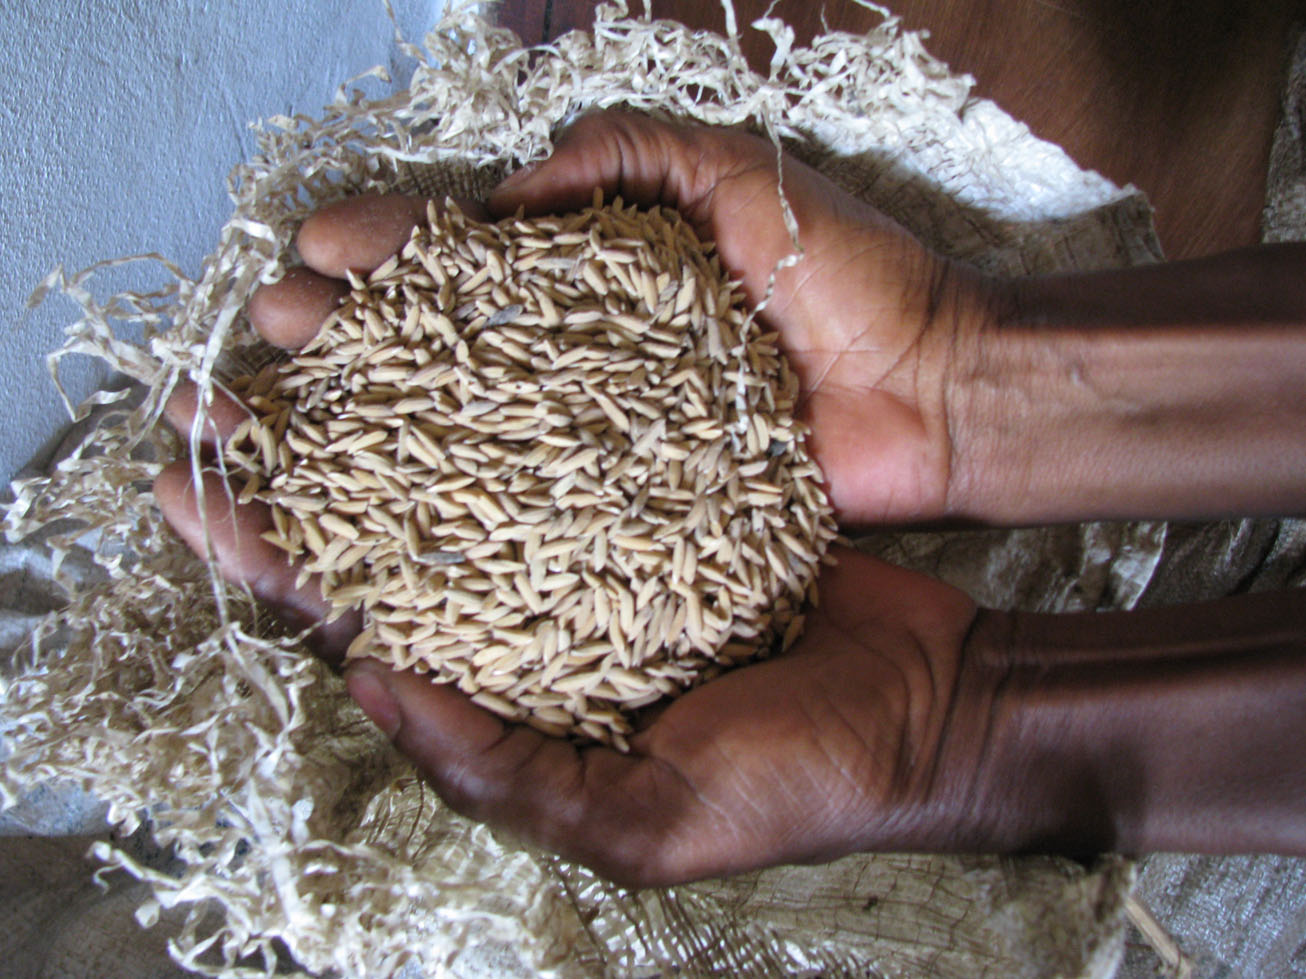  Hambruna aumenta en el Pacífico y el Caribe por los efectos de ‘El Niño’: FAO